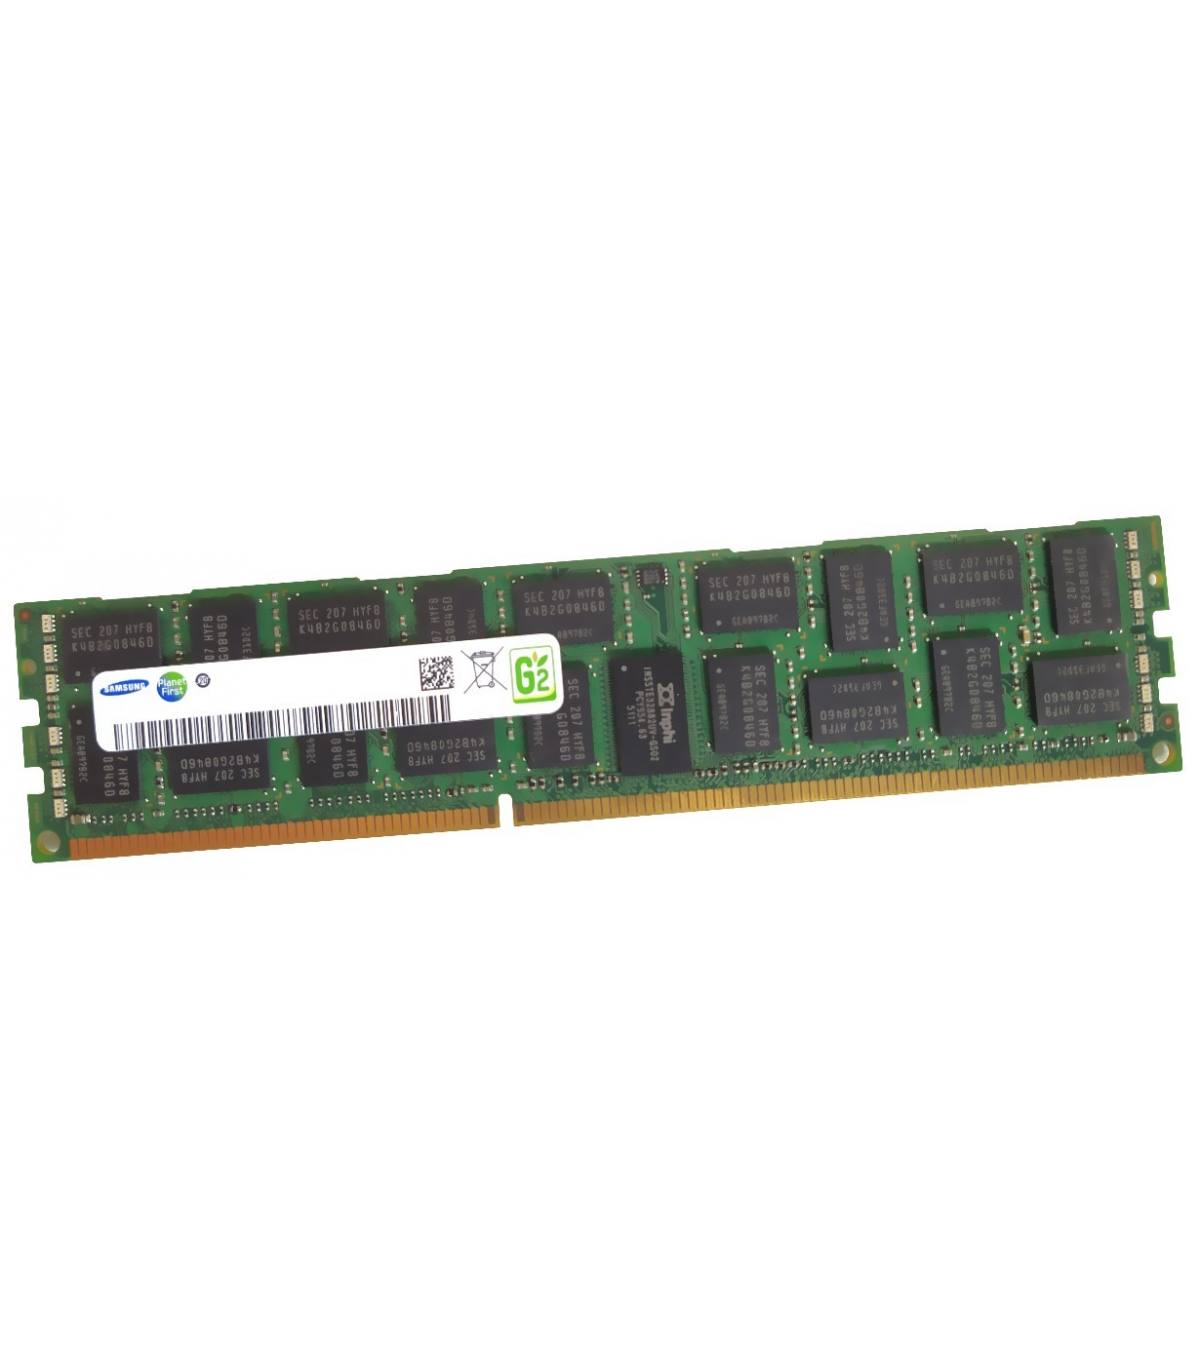 RAM SAMSUNG 8GB 4Rx8 PC3L 8500R CN M393B1K73DH0-YF8 1208